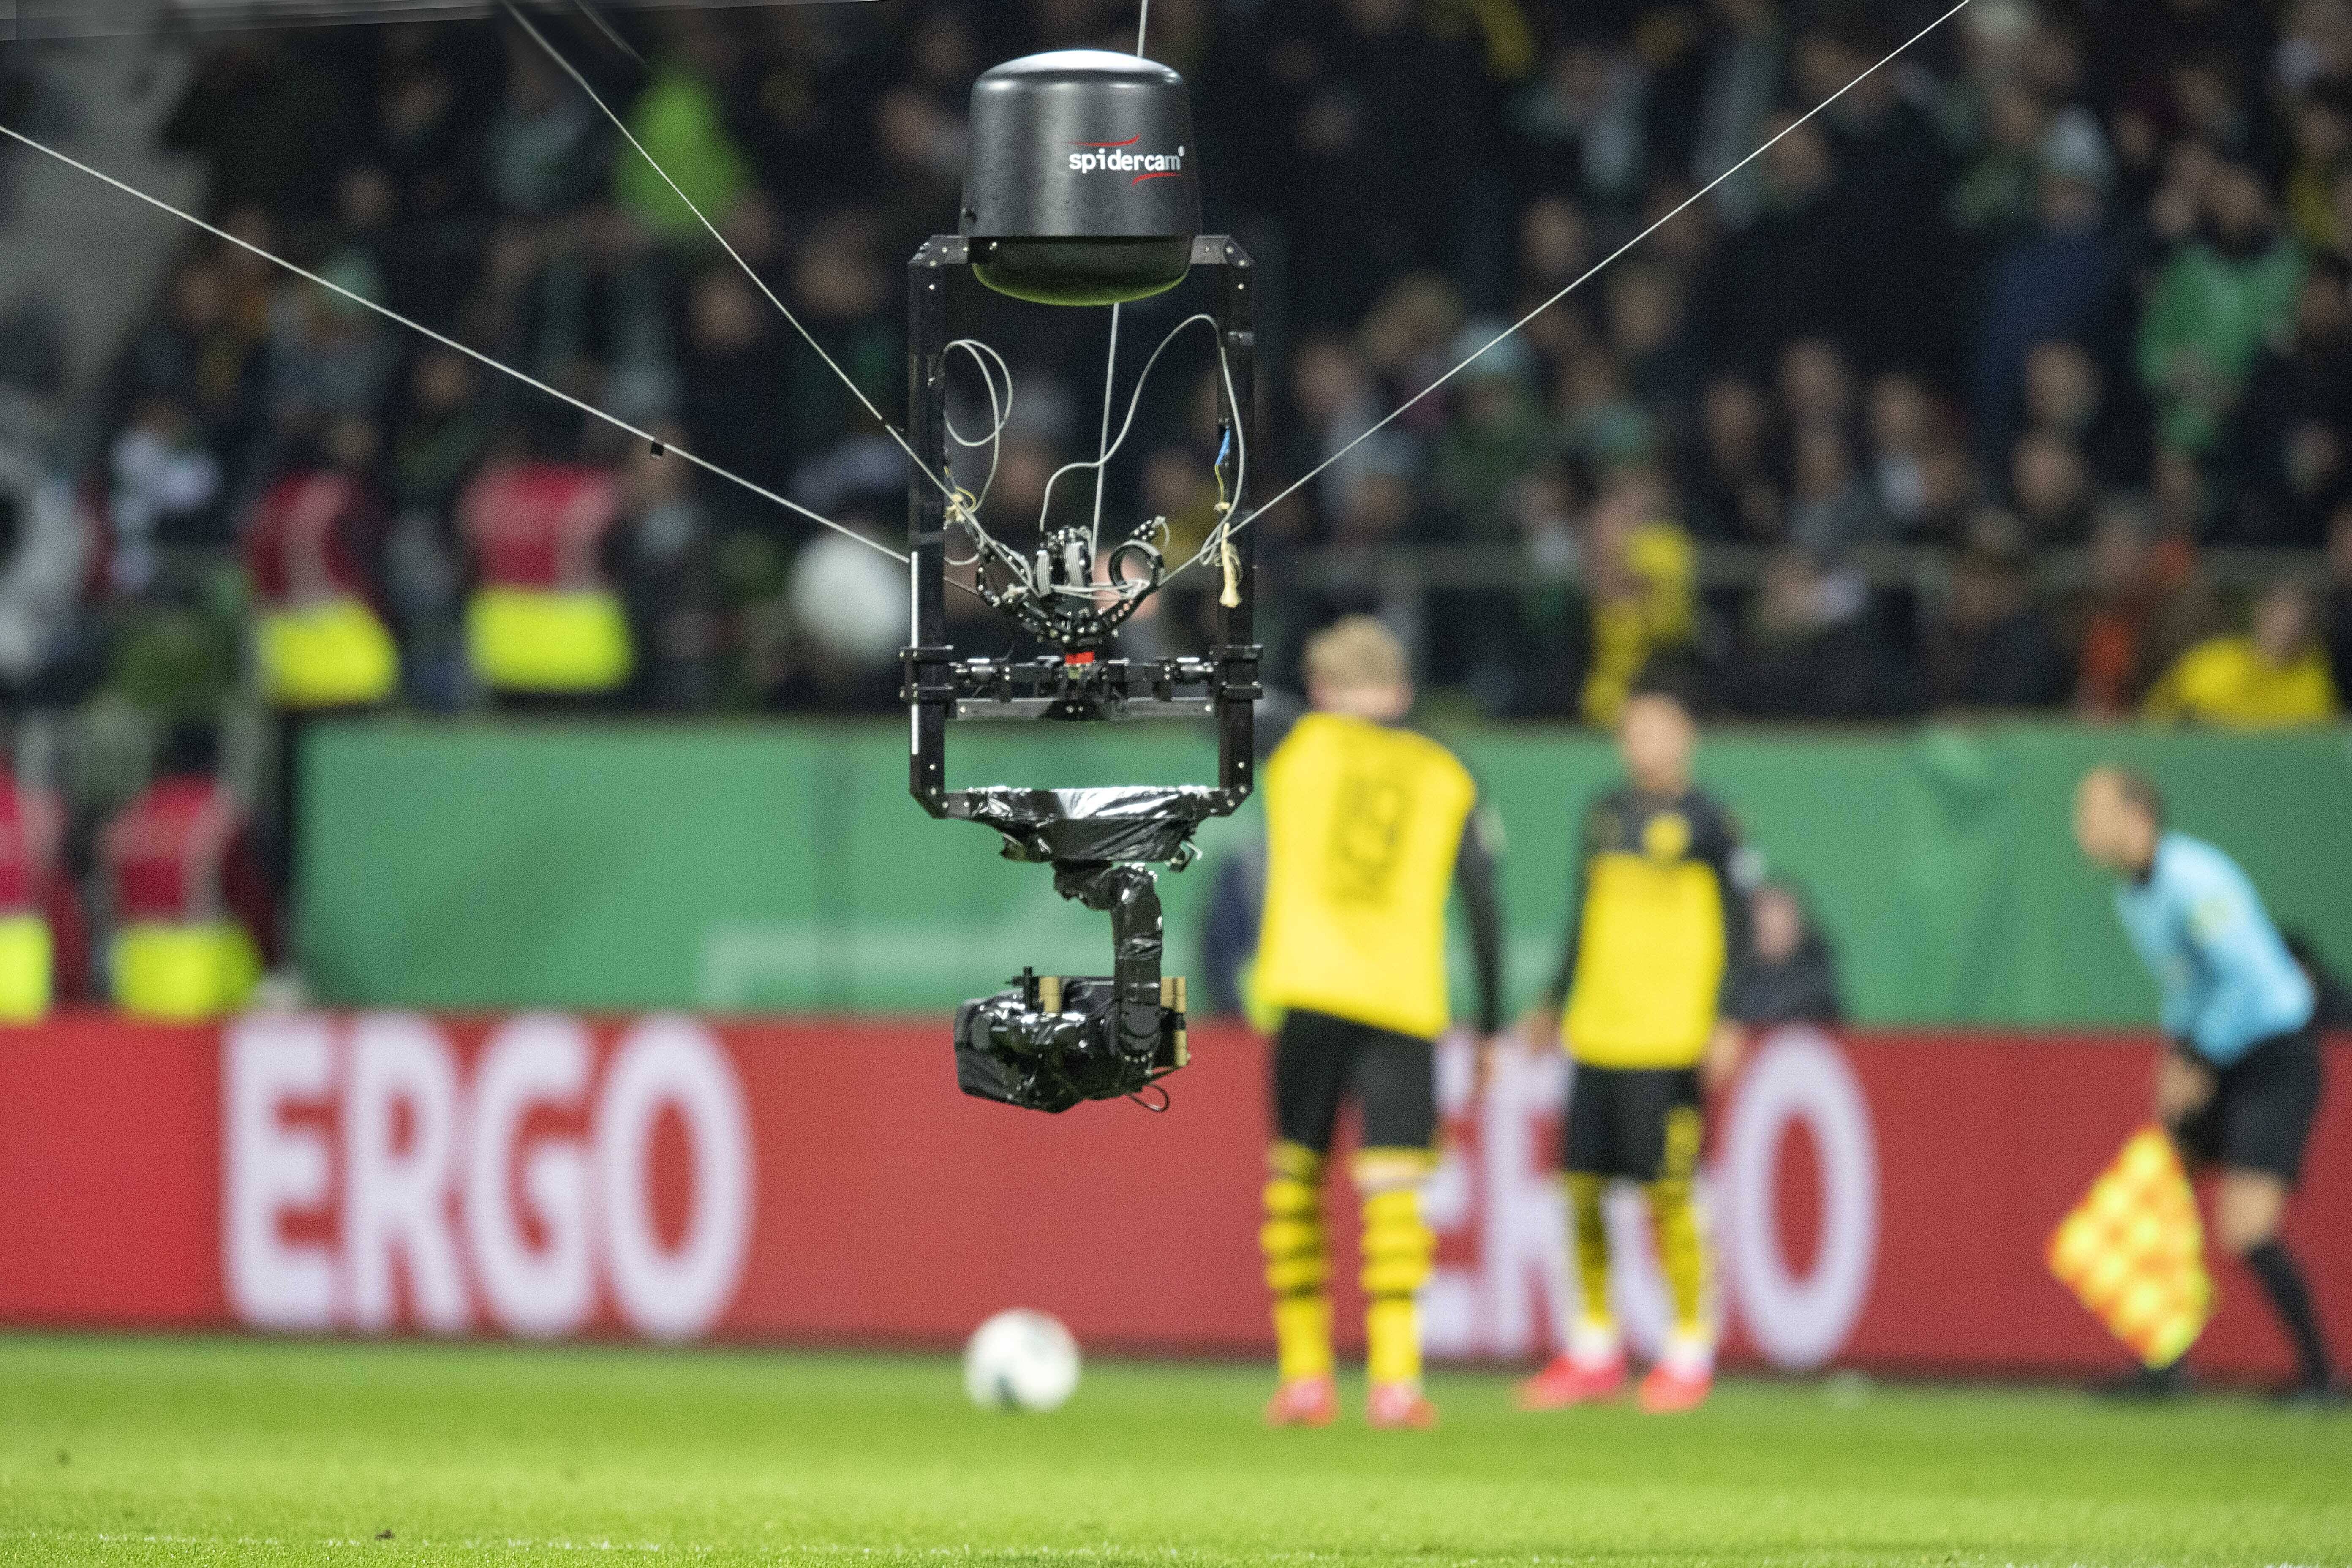 Eine Spider-Cam beim Fußball - getestet wurden Intervies im laufenden Spiel.